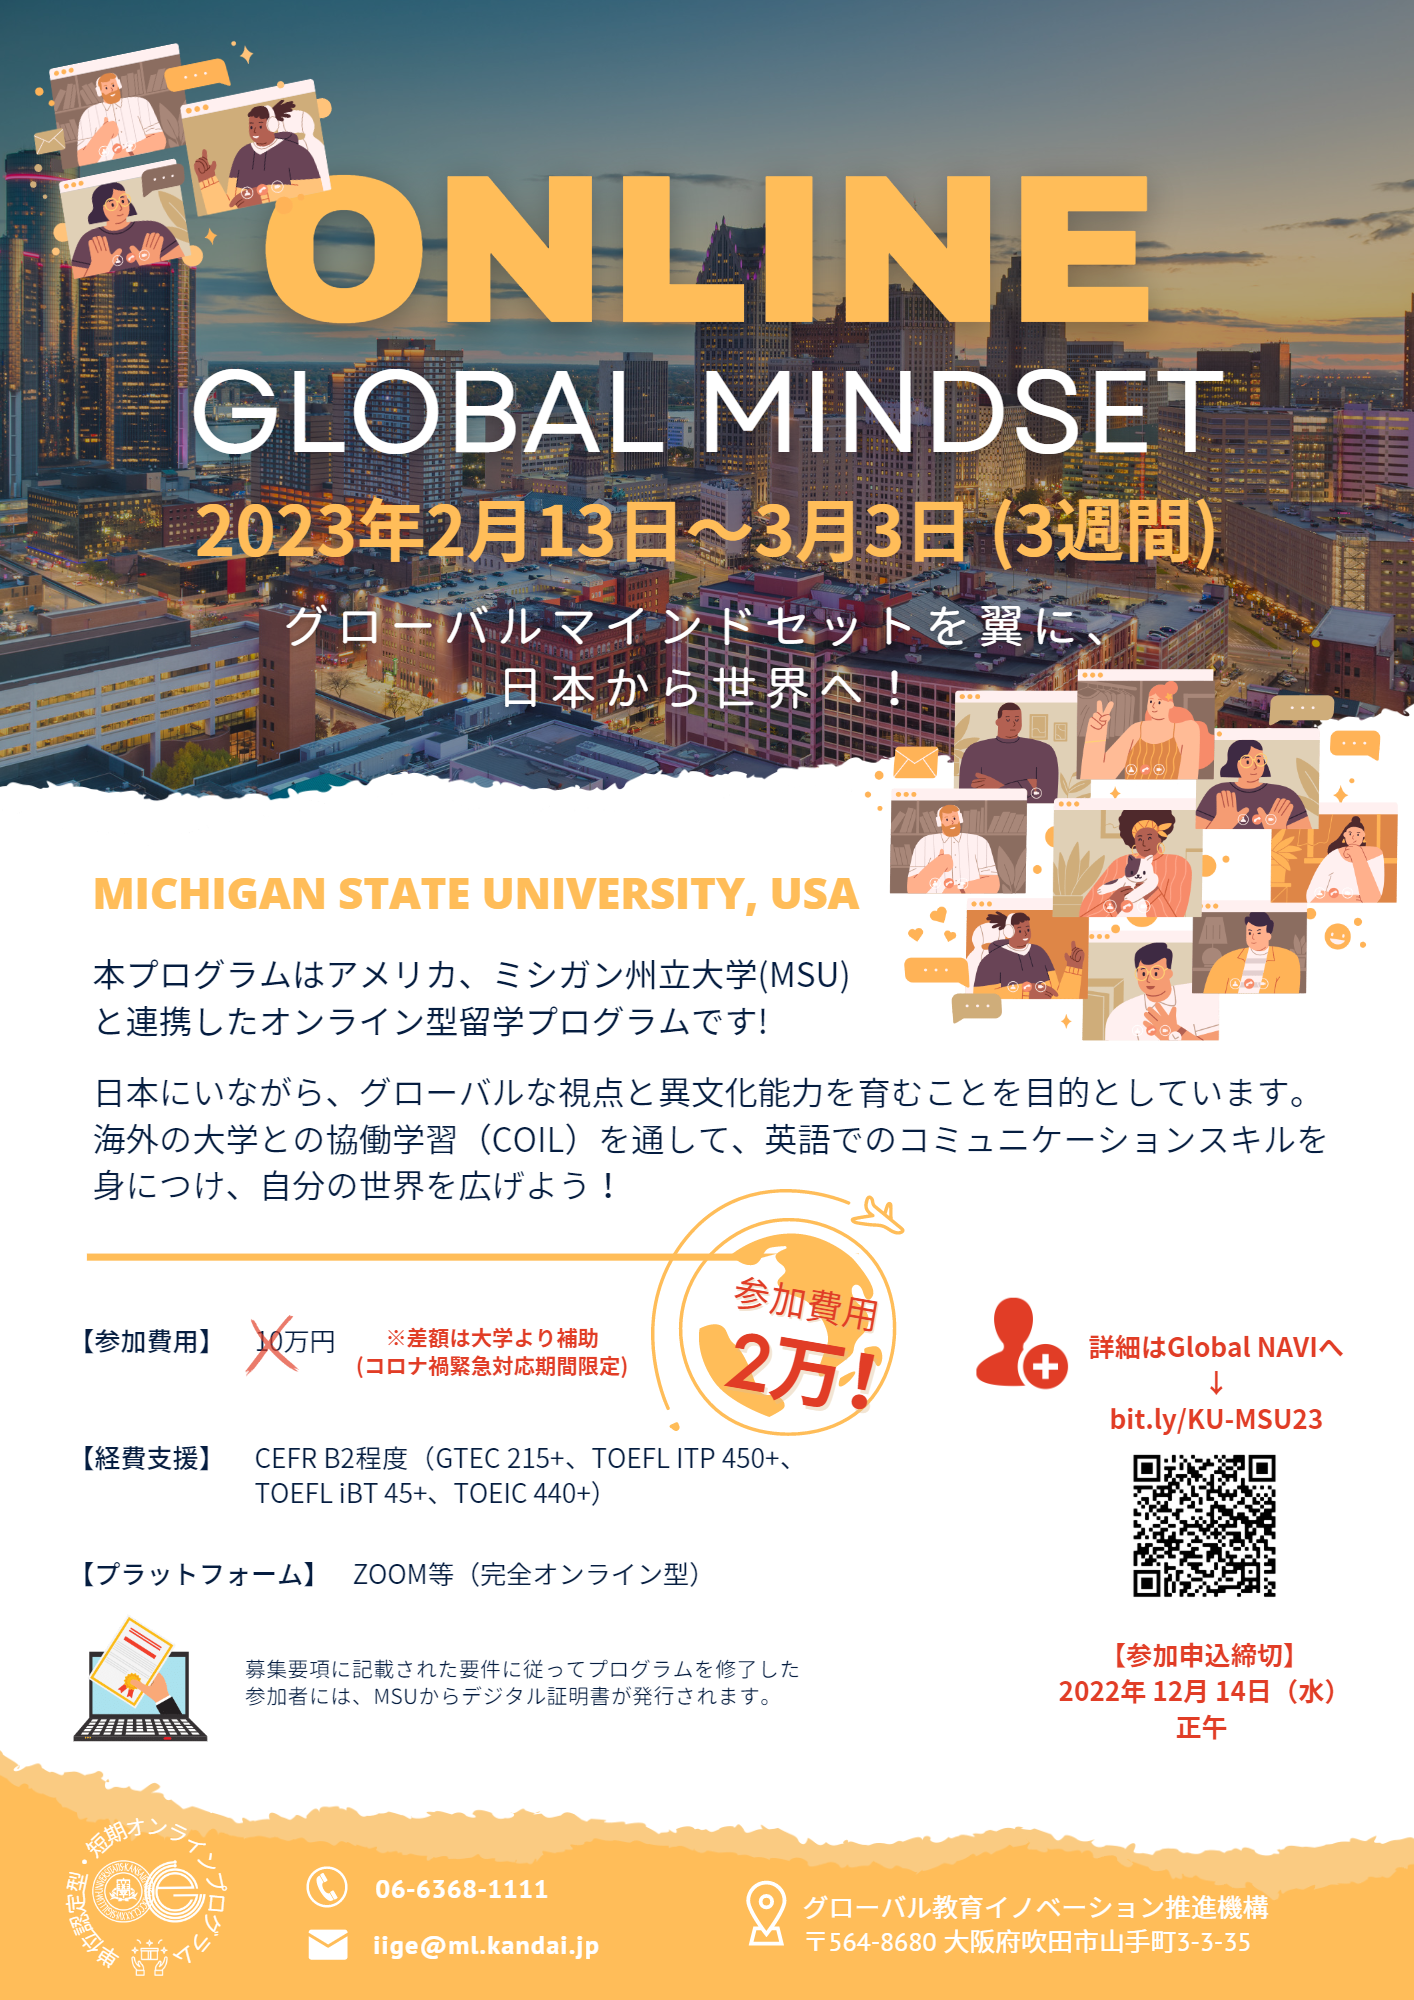 Online Global Mindset Program